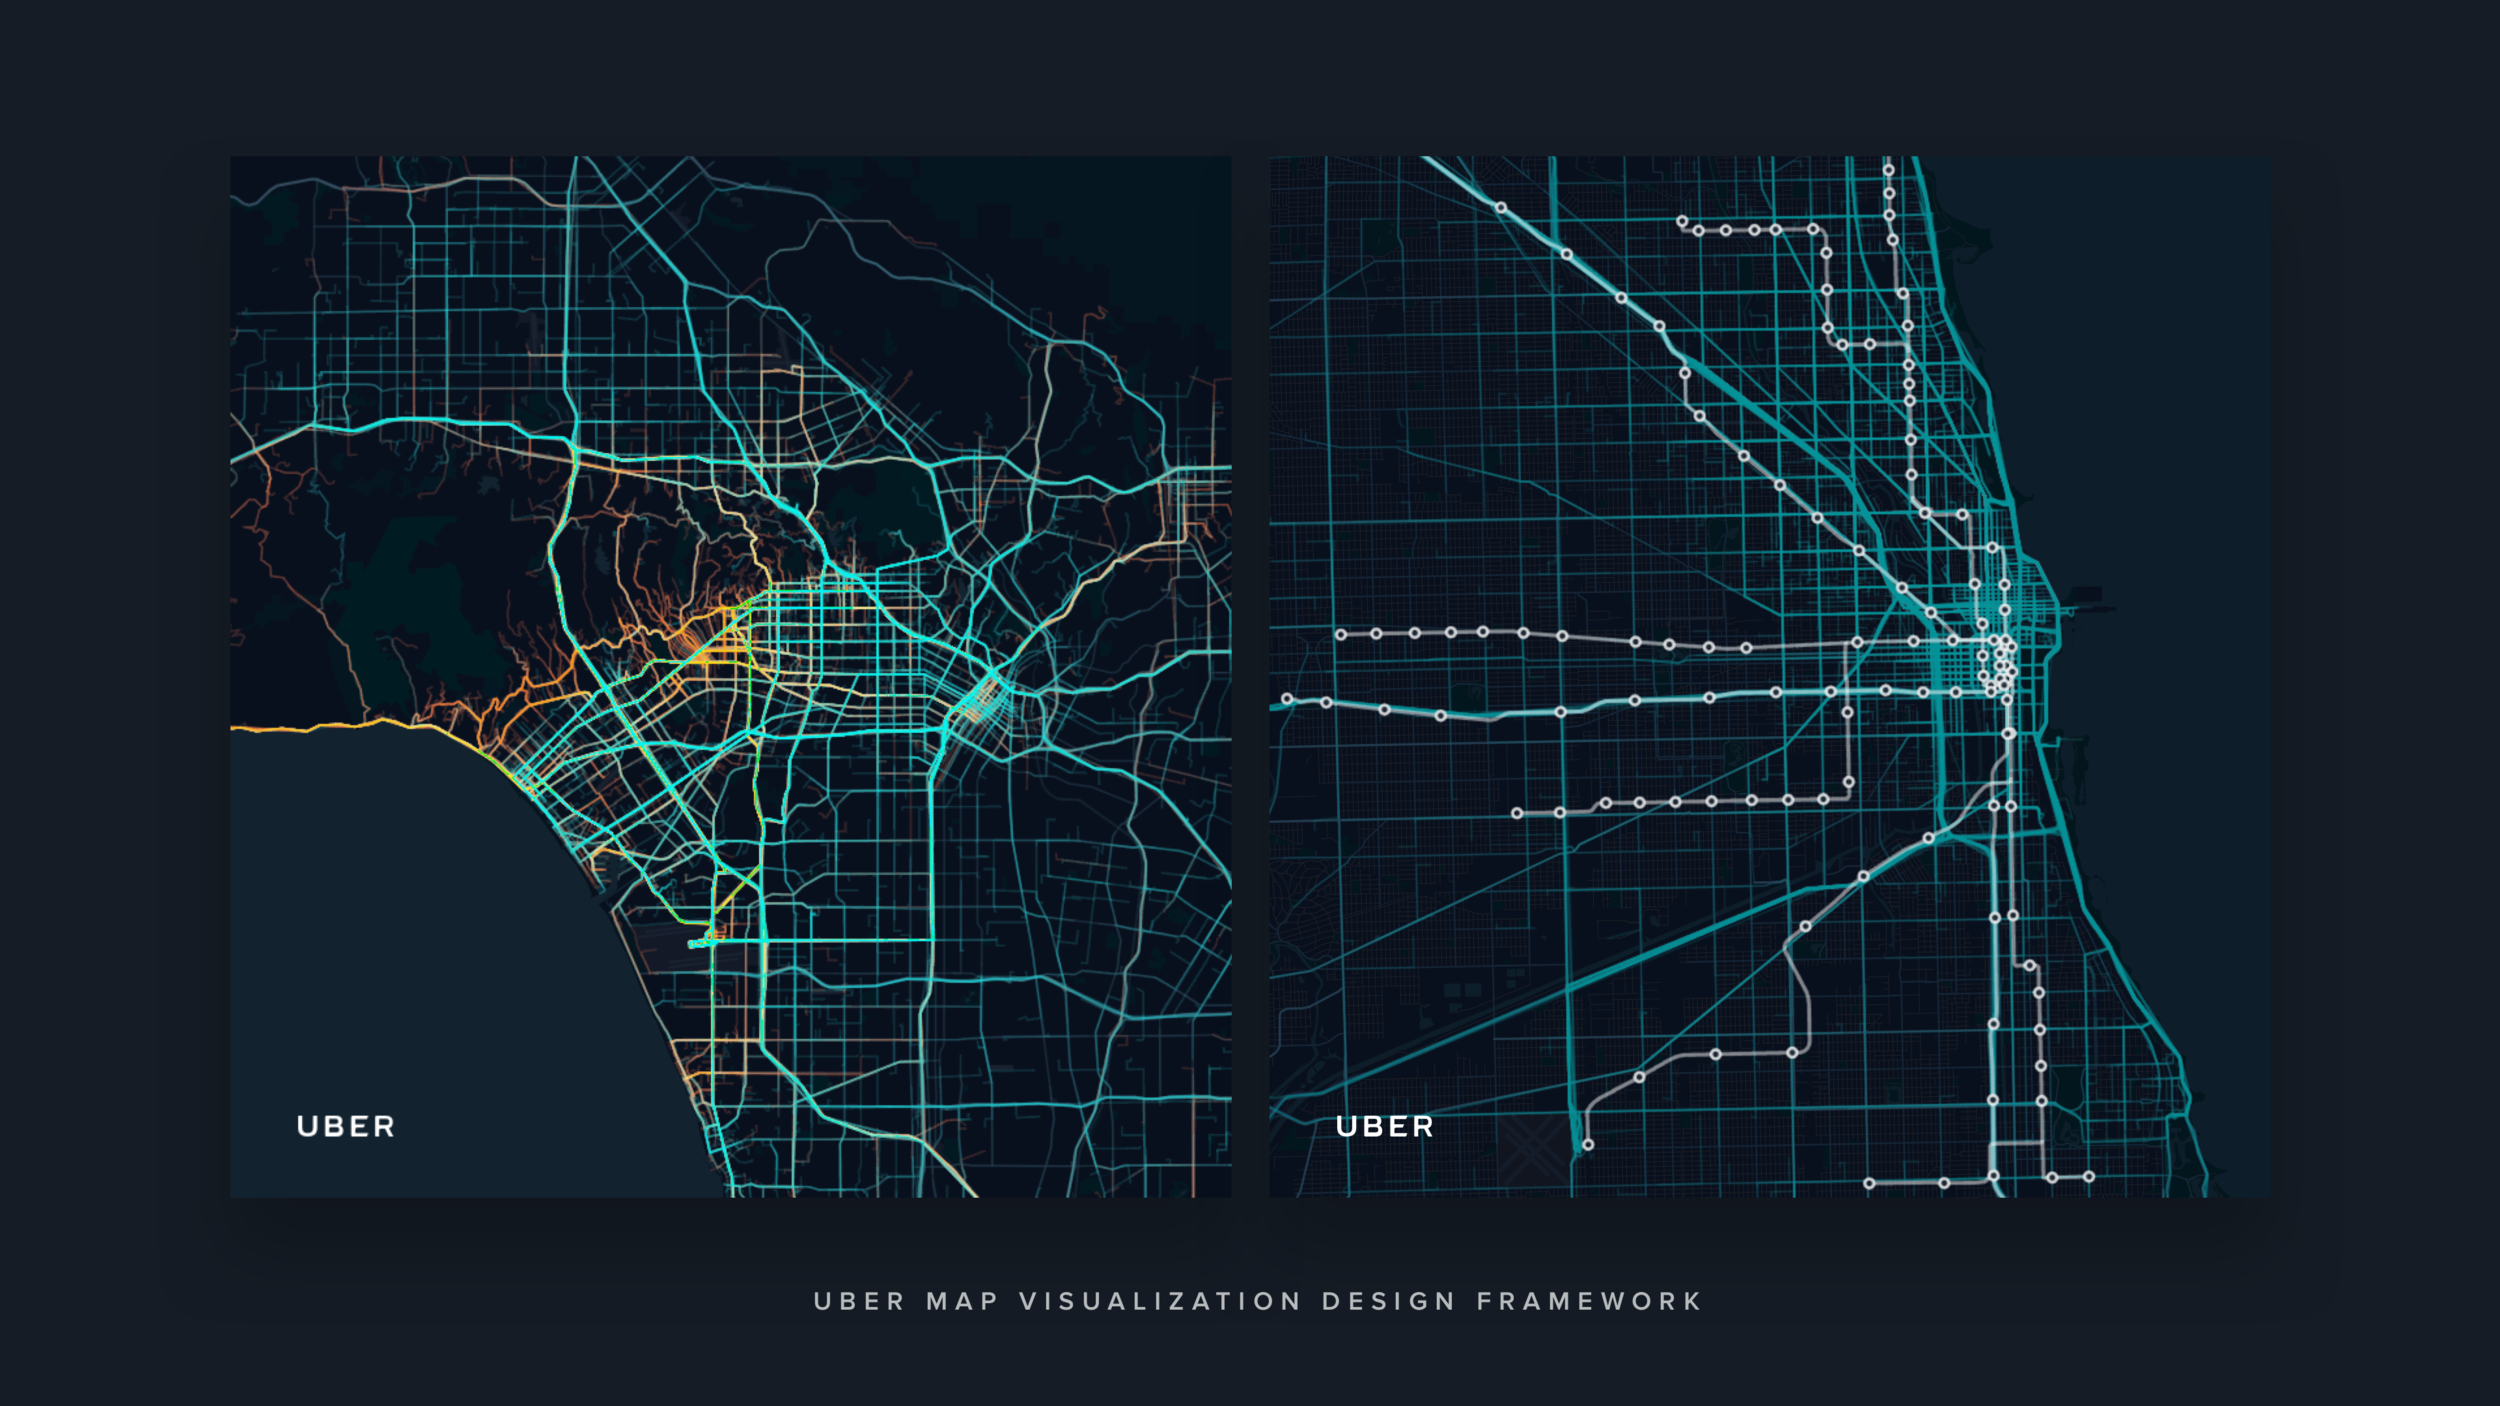 UBER Map Visualization Design Framework